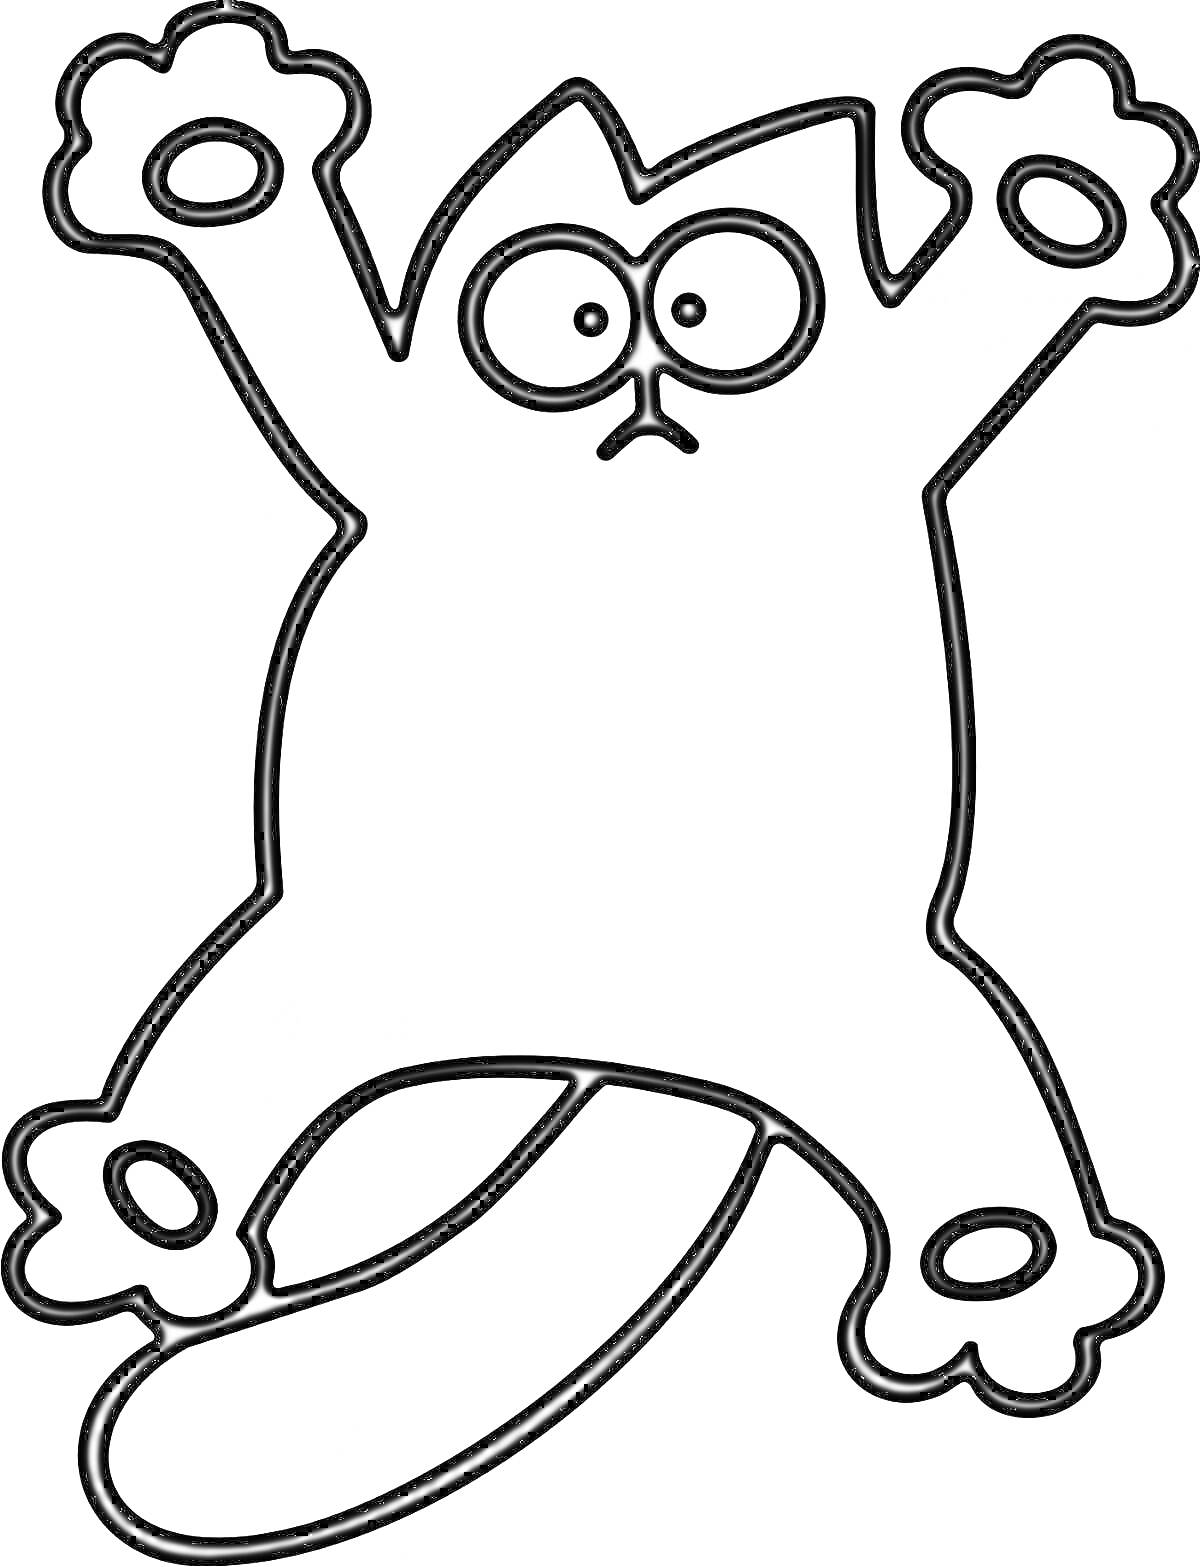 Раскраска Кот с большими глазами в забавной позе с поднятыми вверх лапами